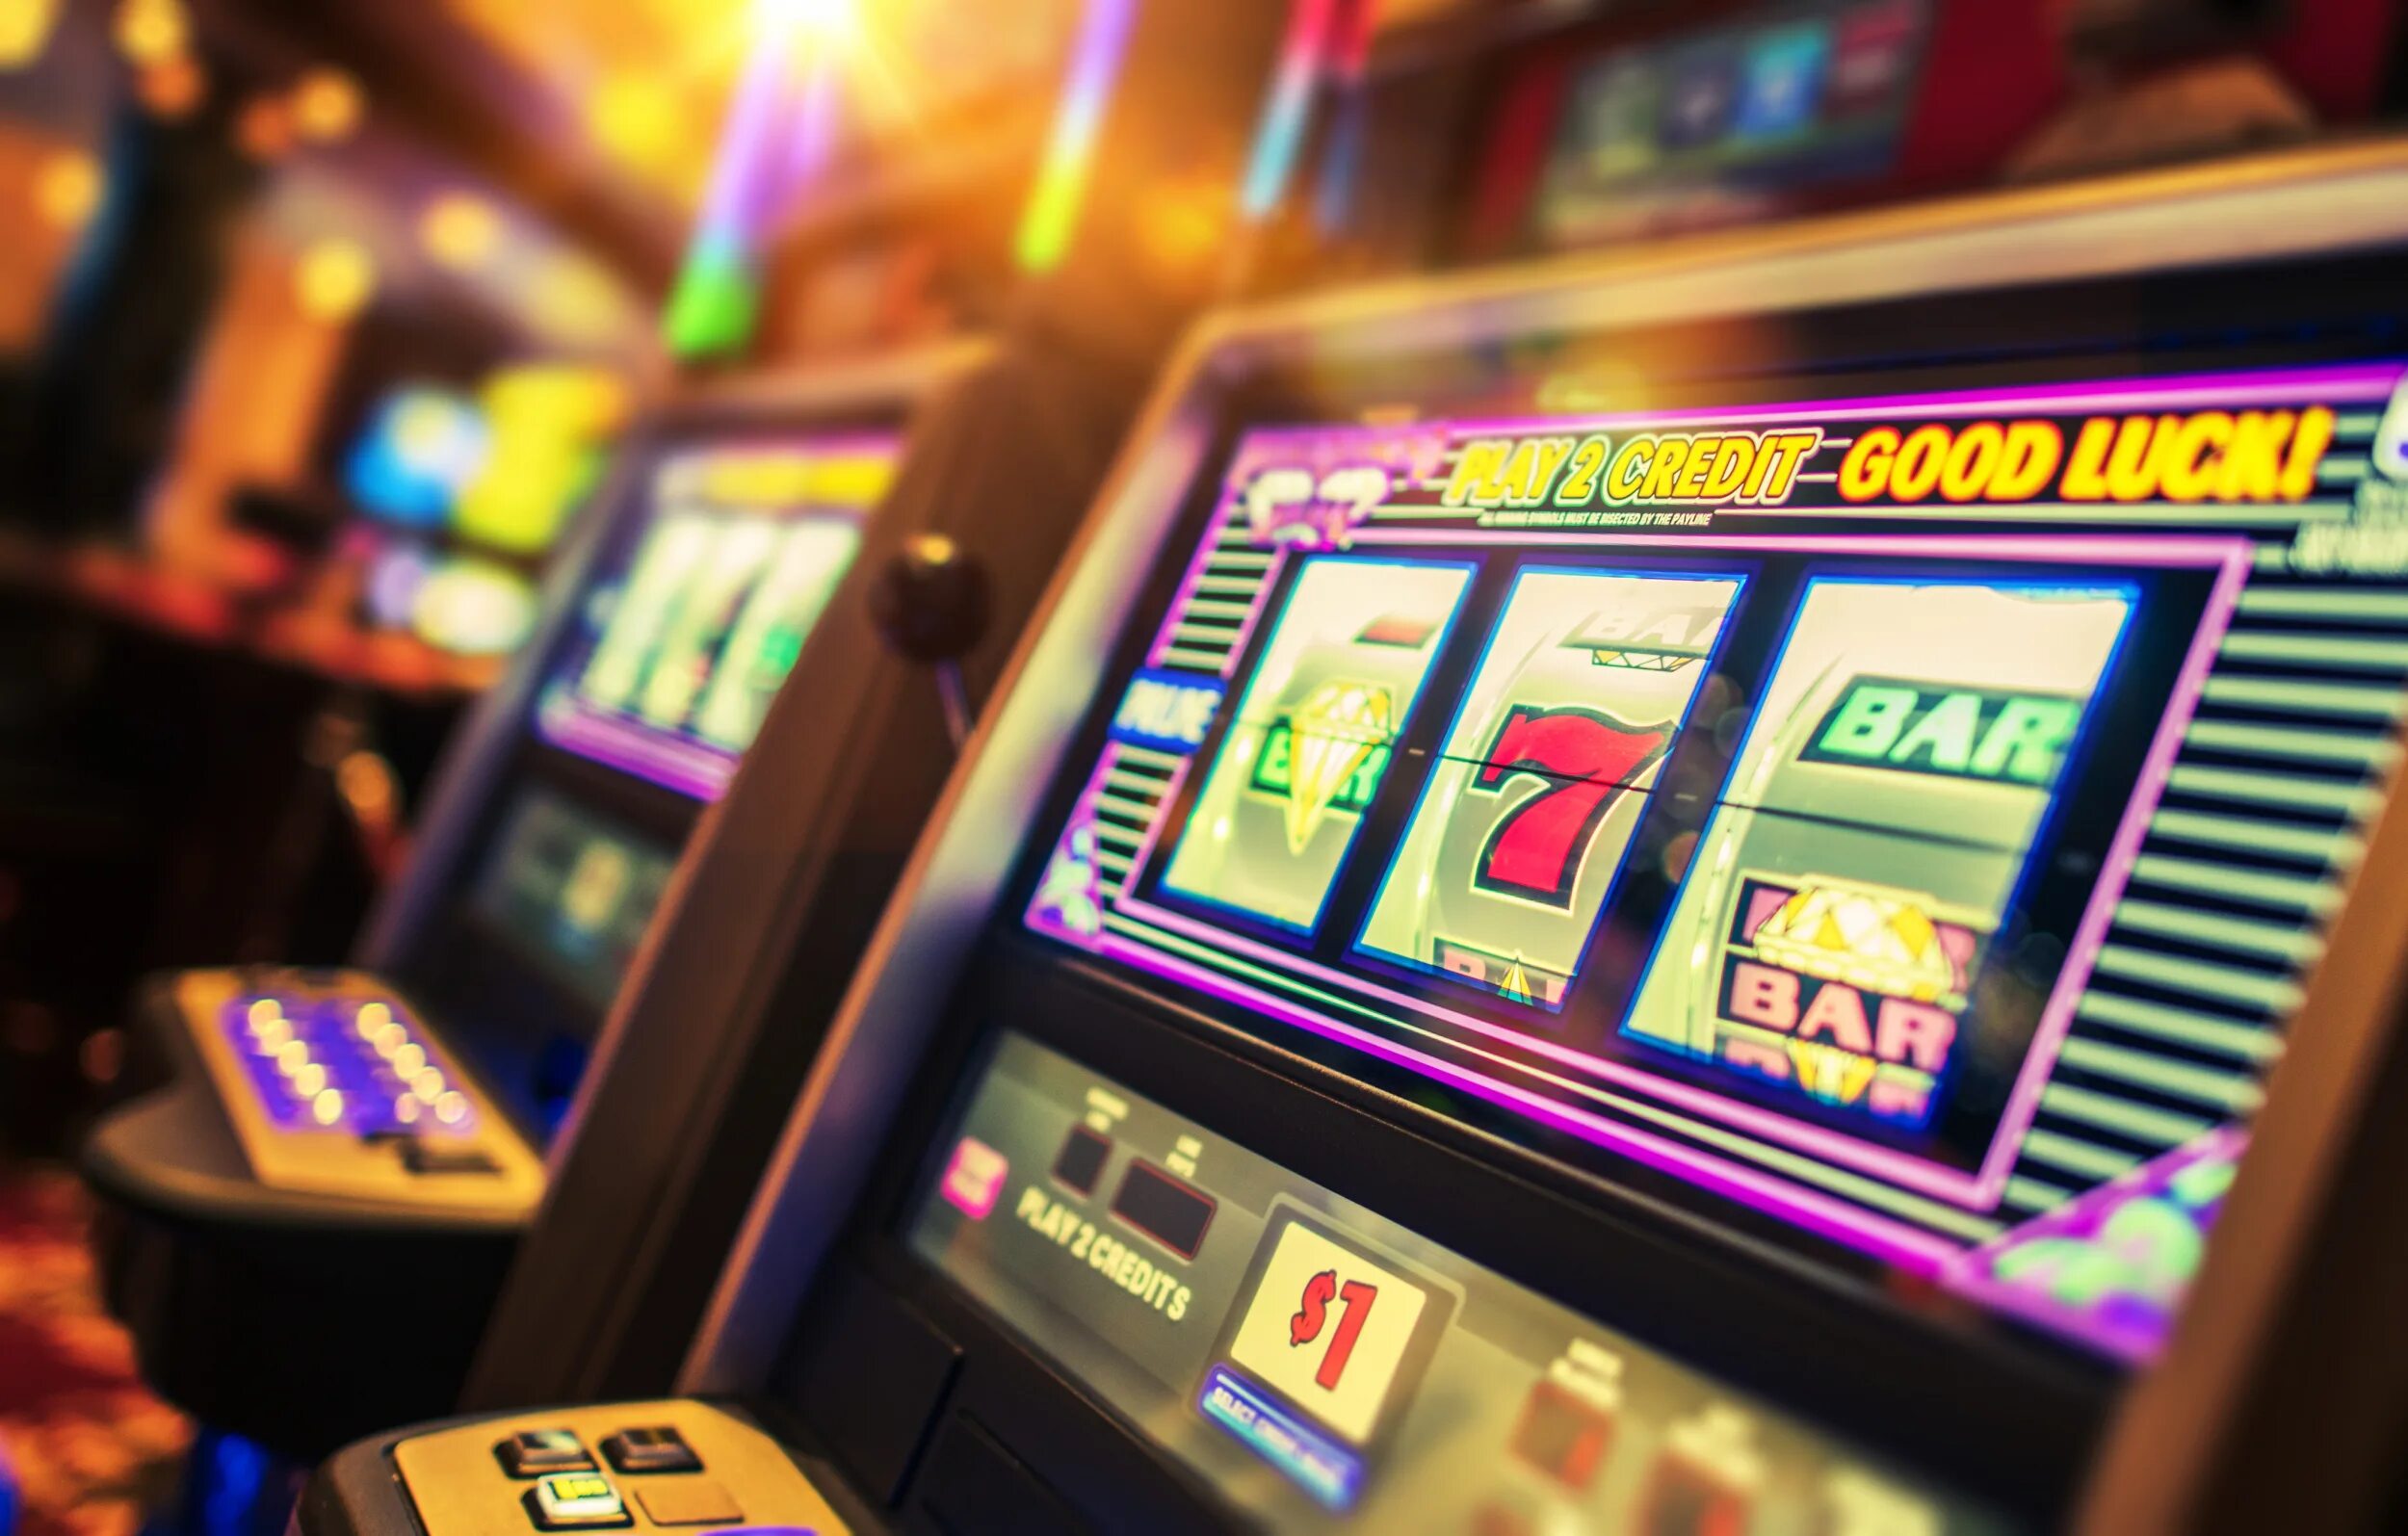 Автомат казино. Игровой автомат казино. Красивые игровые автоматы в казино. Зал игровых автоматов. Игровые автоматы сбербанк playmax1